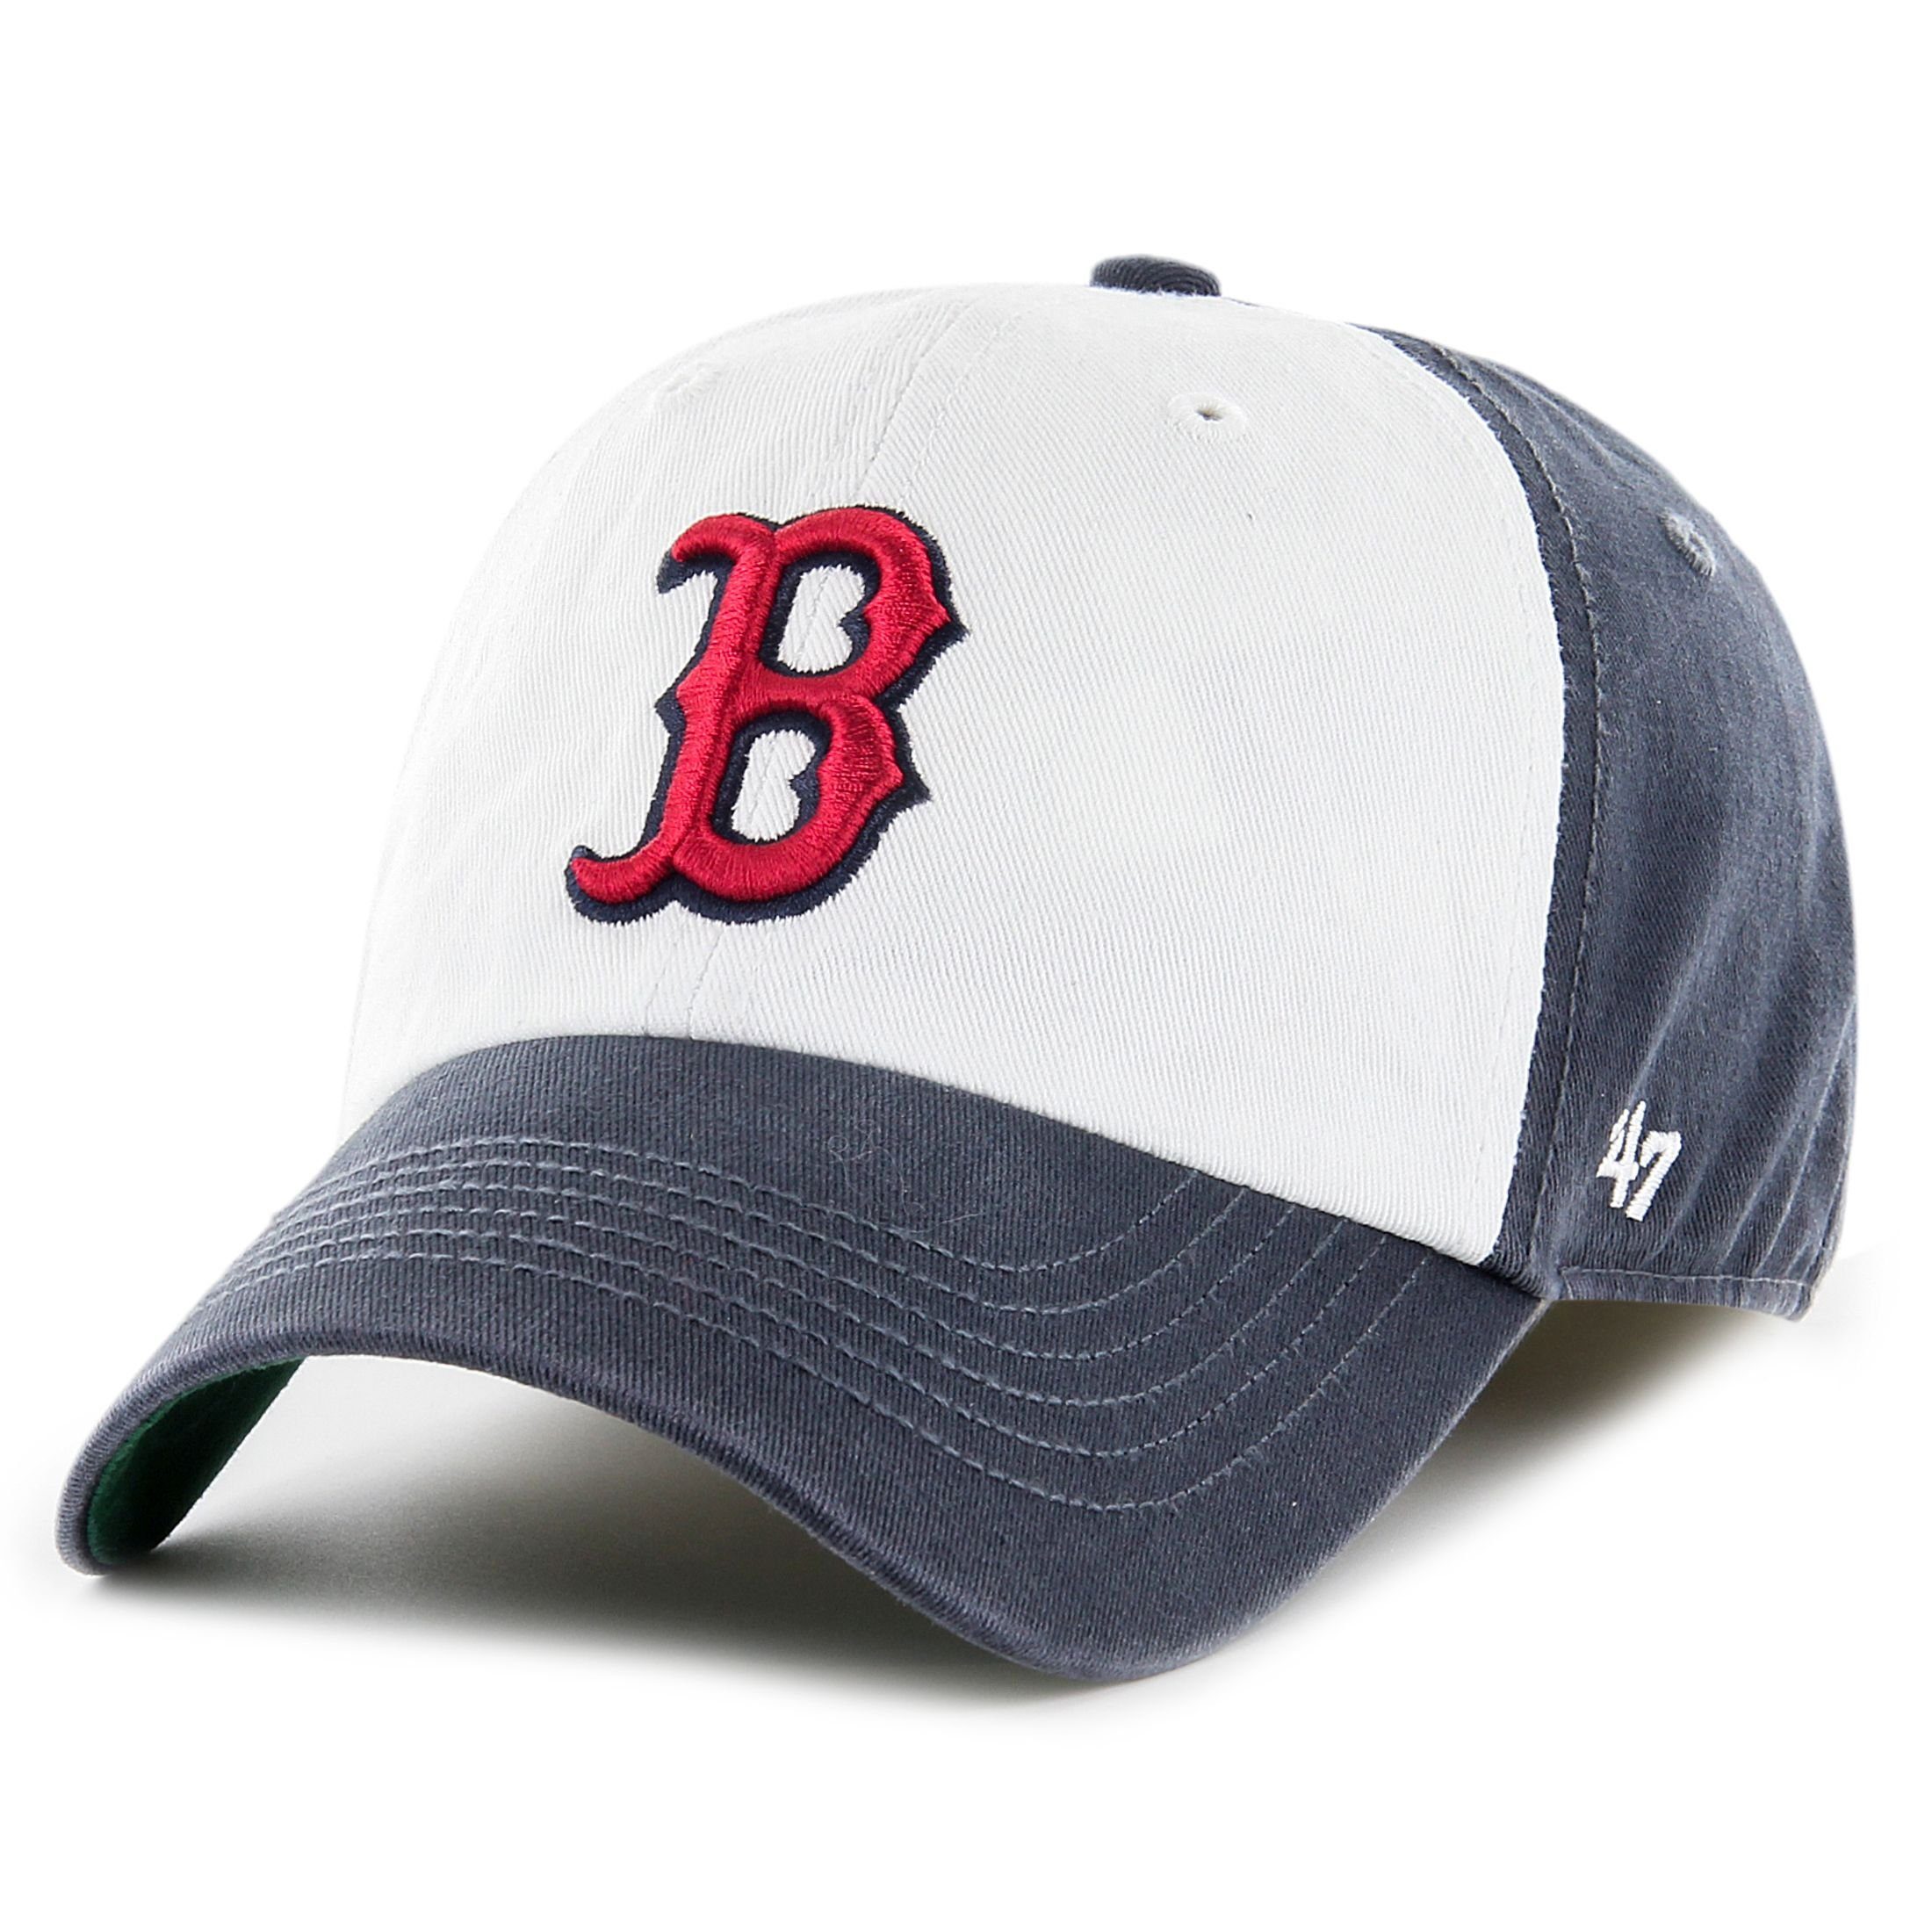 x27;47 Brand Flex Cap Franchise Boston Red Sox FRESHMAN